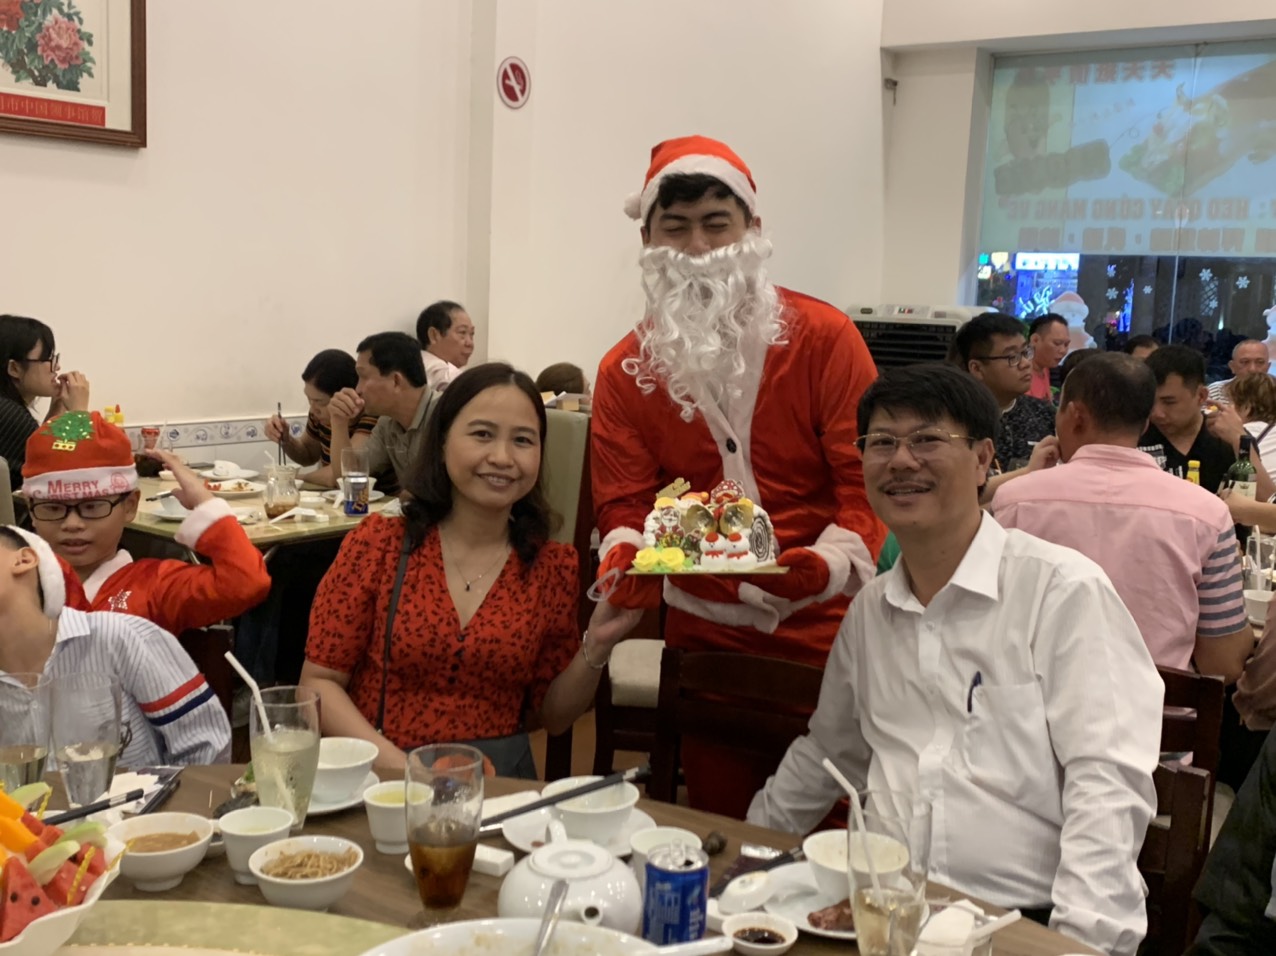 Noel năm 2019 khách đến đông đúc và nhận được quà từ ông già Noel đây - Haihoangbinhtan.com 13